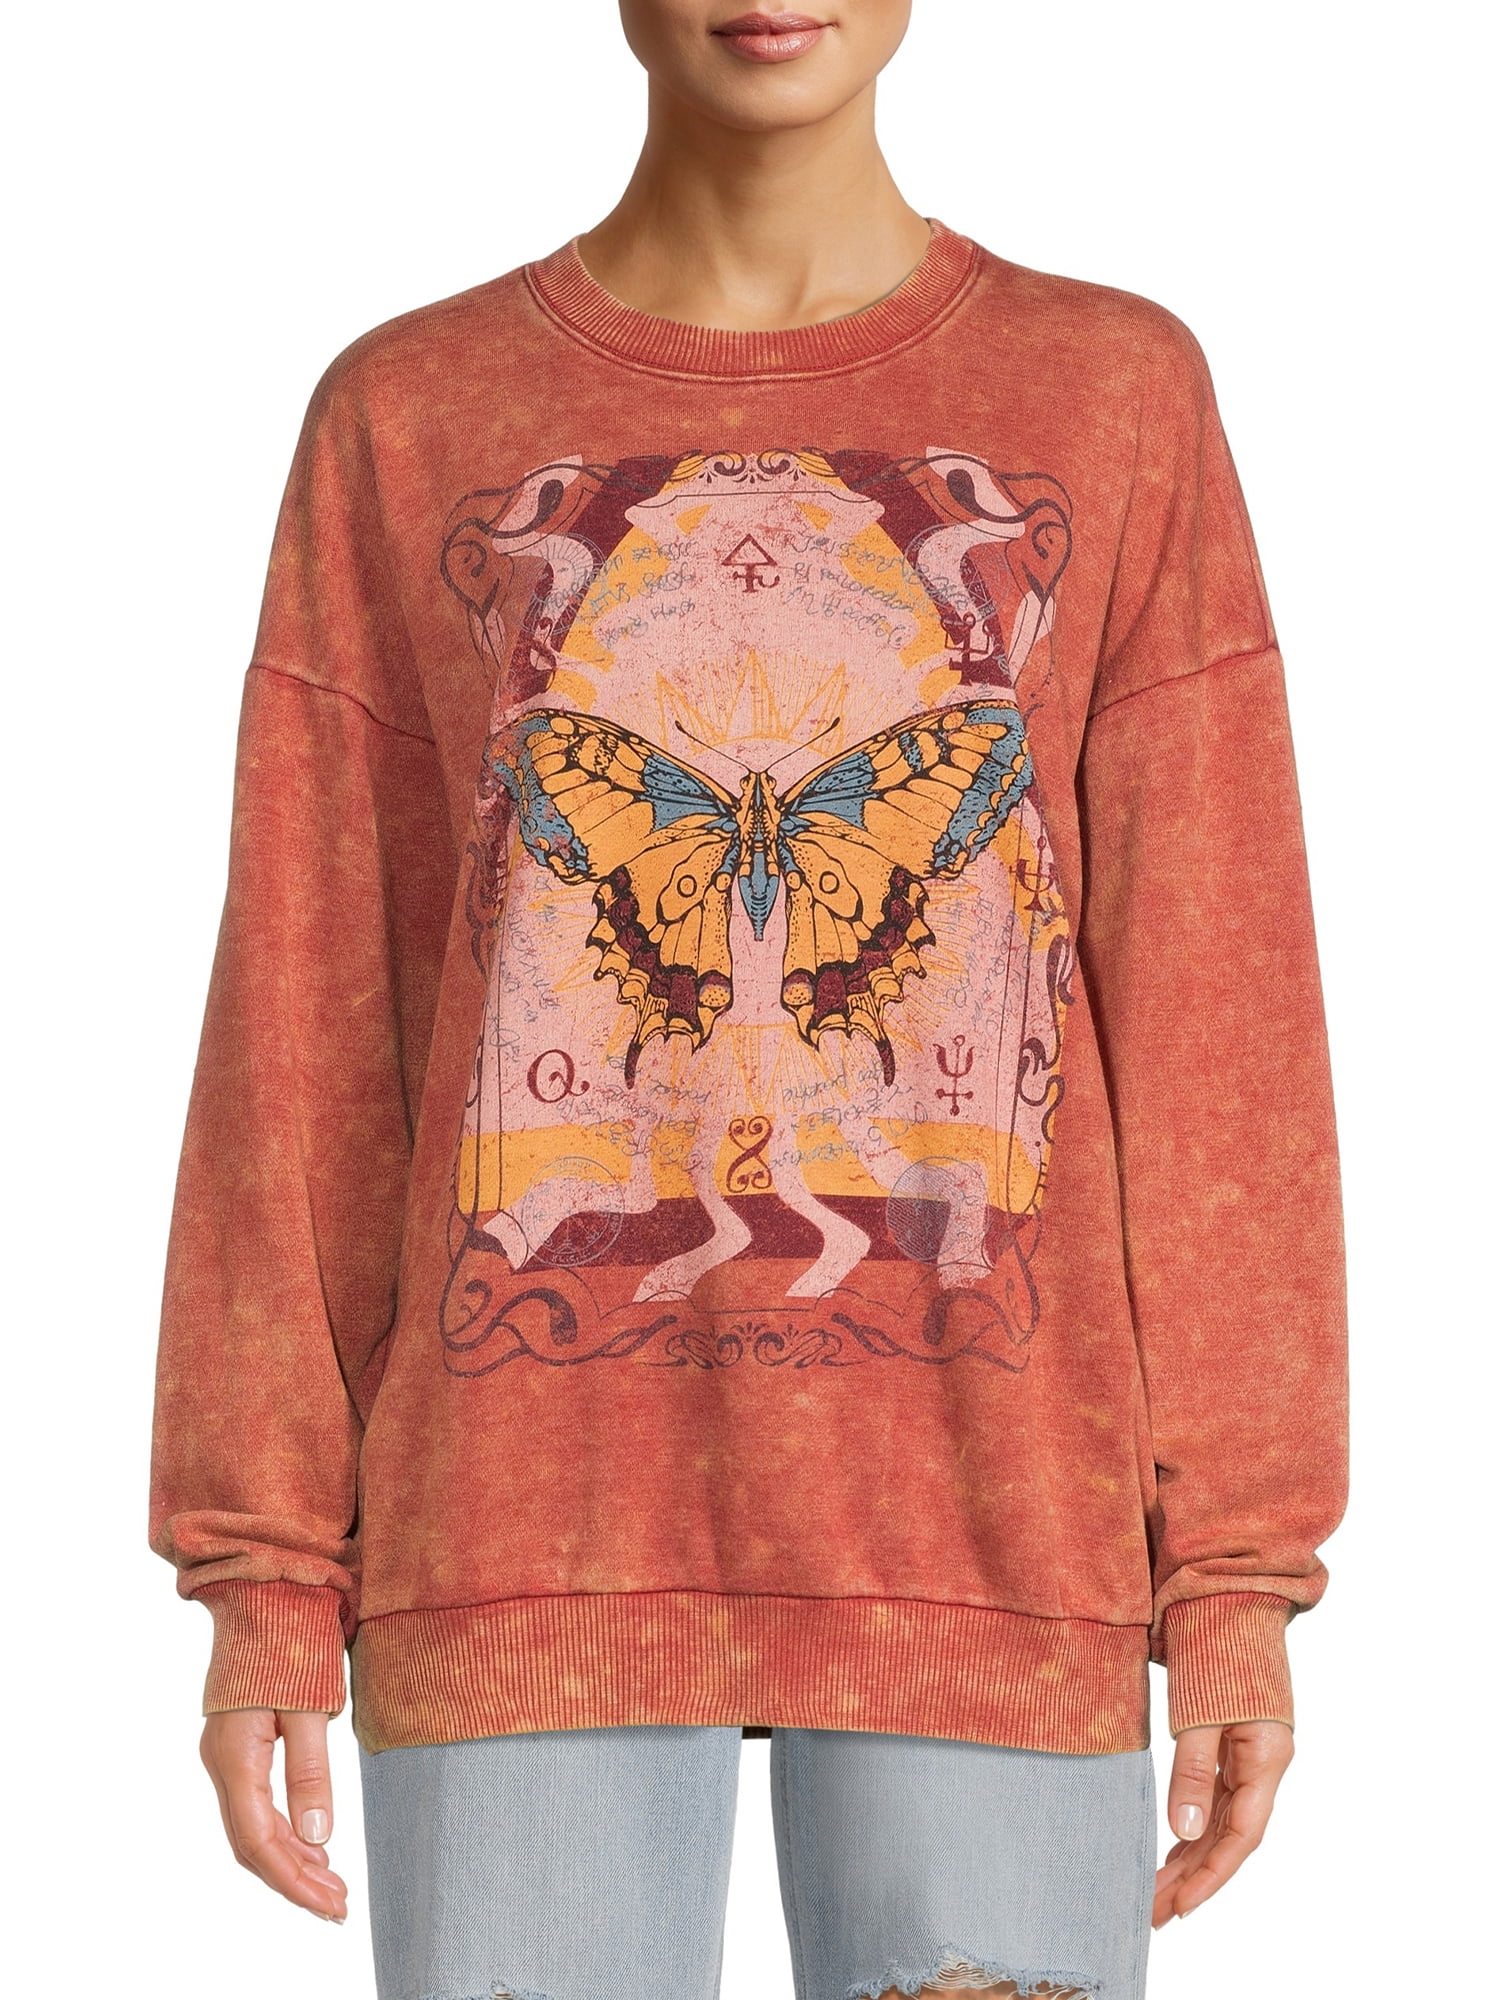 LV Butterflies Crewneck Sweatshirt - Men - Ready-to-Wear